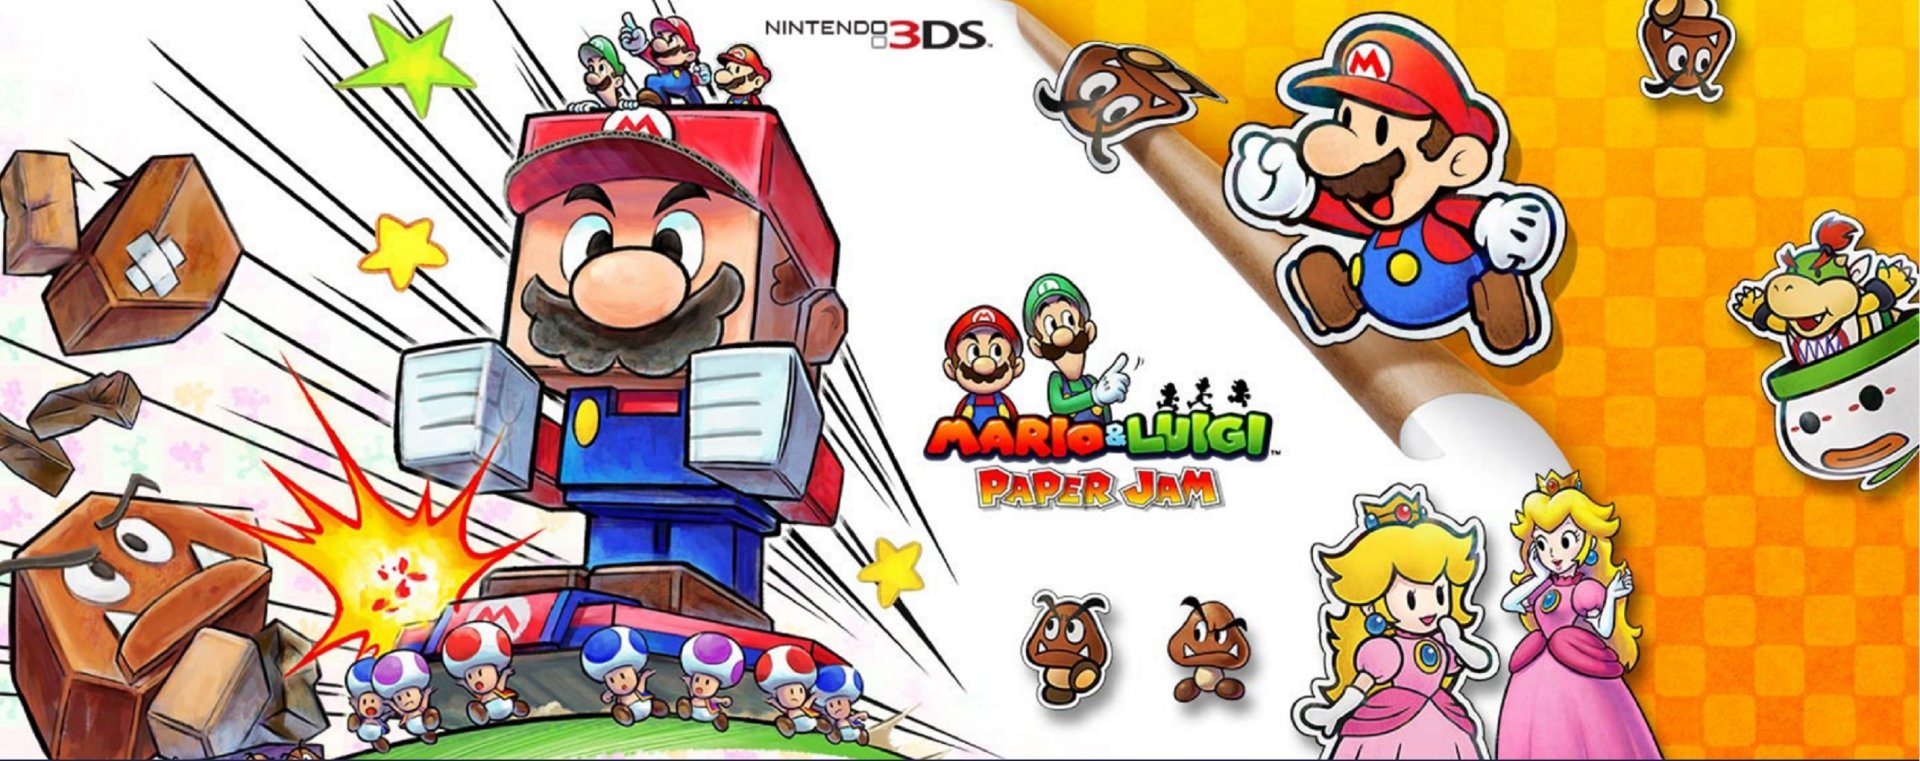 Video Game Mario & Luigi: Paper Jam Art. 